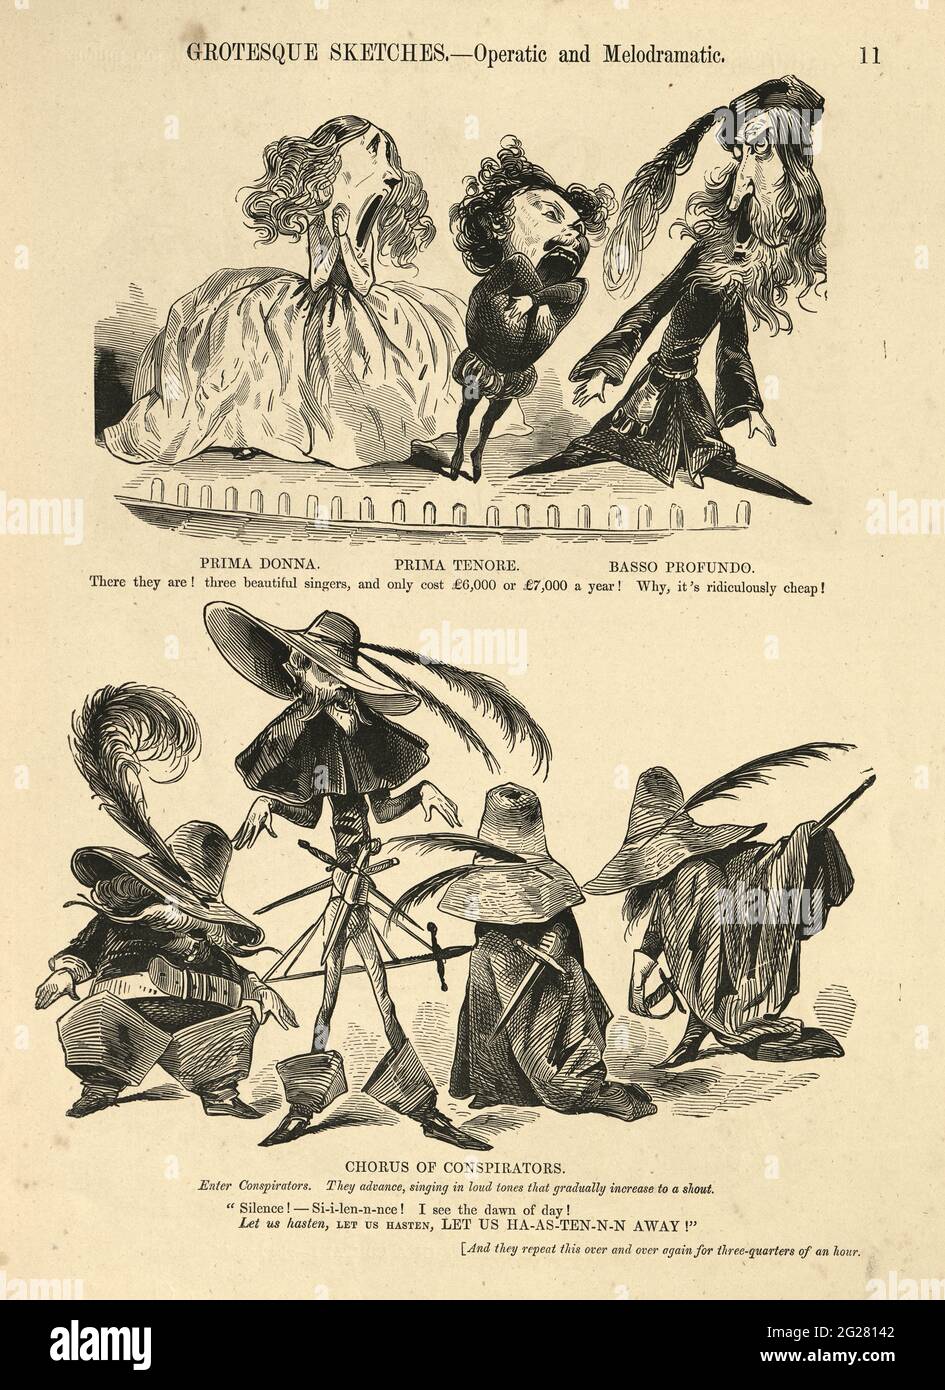 Opere liriche e melodrammatiche, caricature umoristiche e grottesche di Gustave Dore, vittoriano 1860. Prima donna, prima tenore Foto Stock